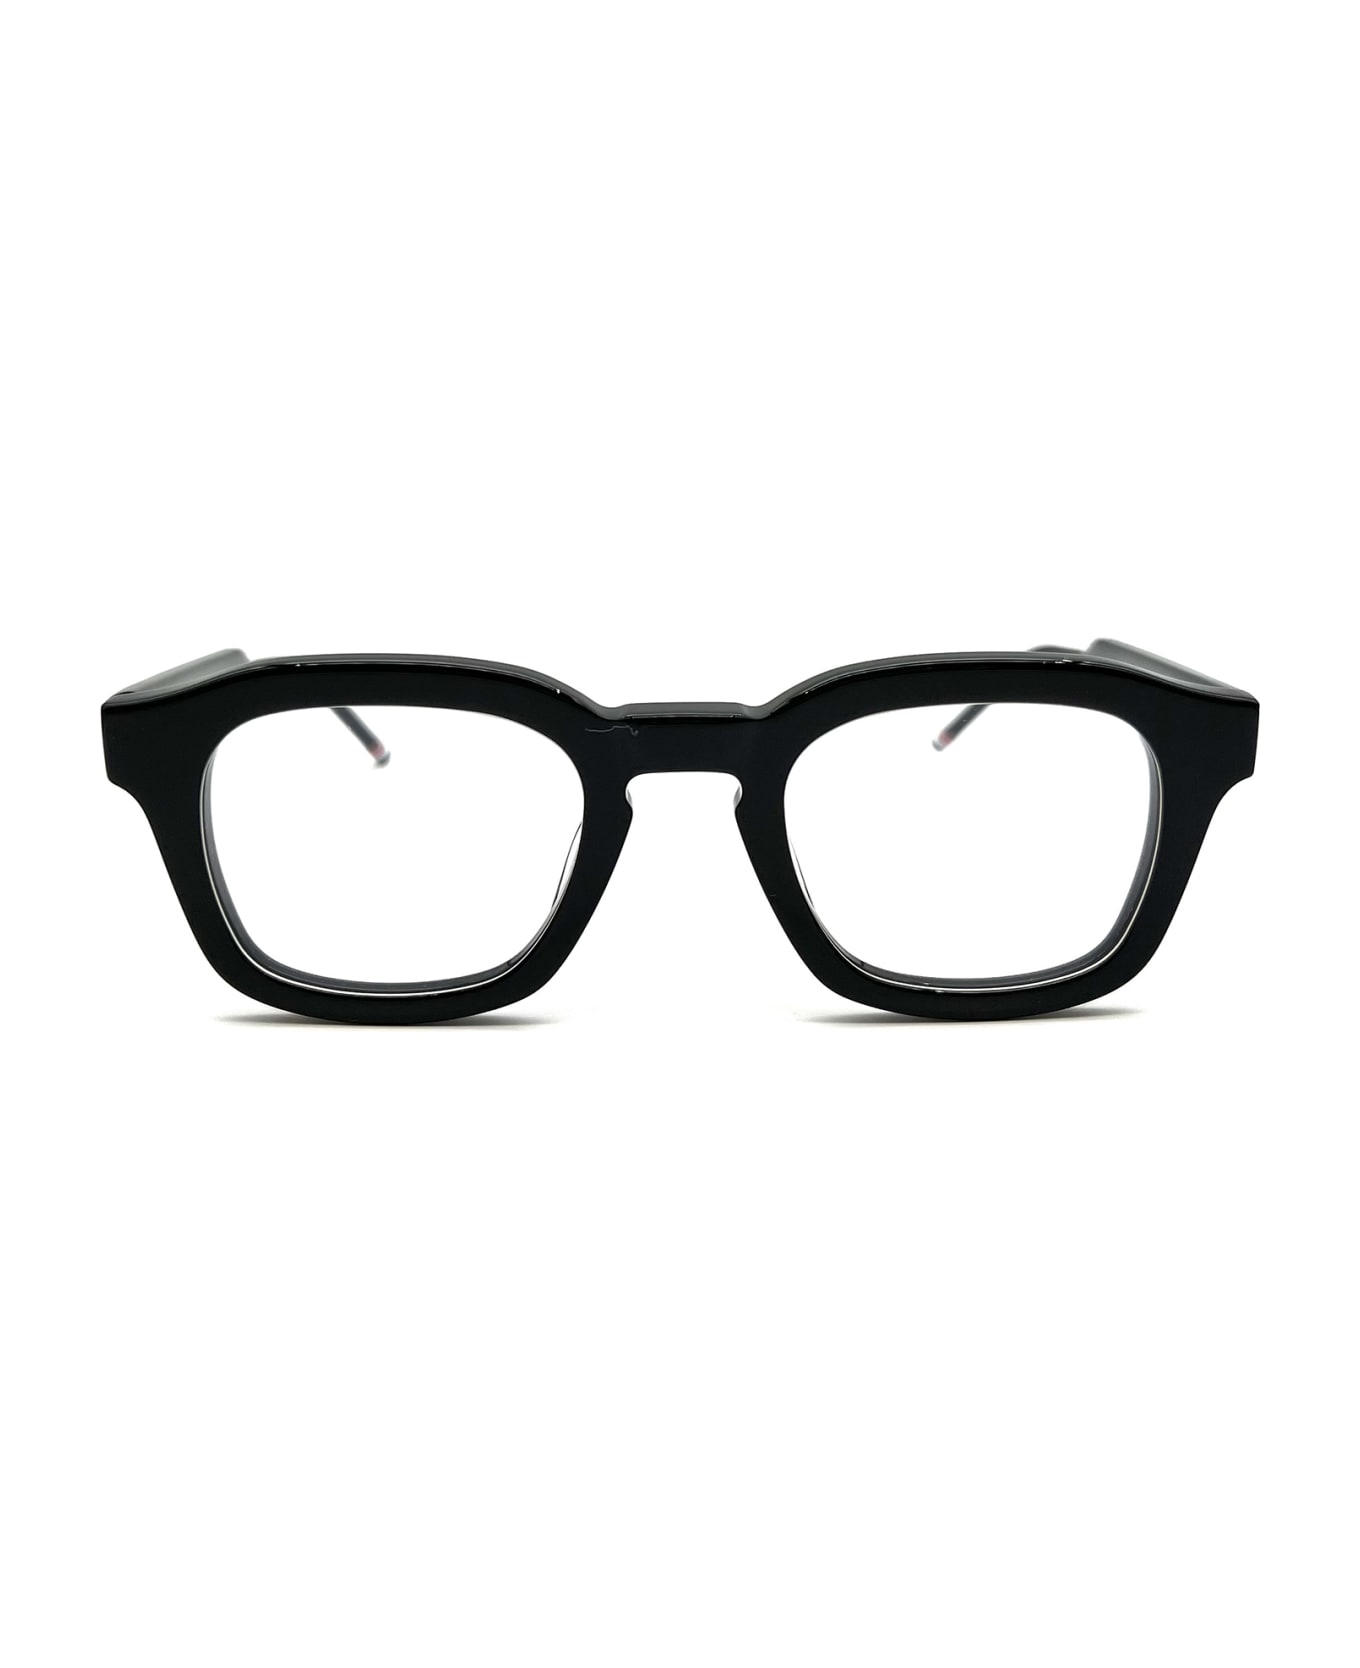 Thom Browne UEO412A/G0002 Eyewear - Black